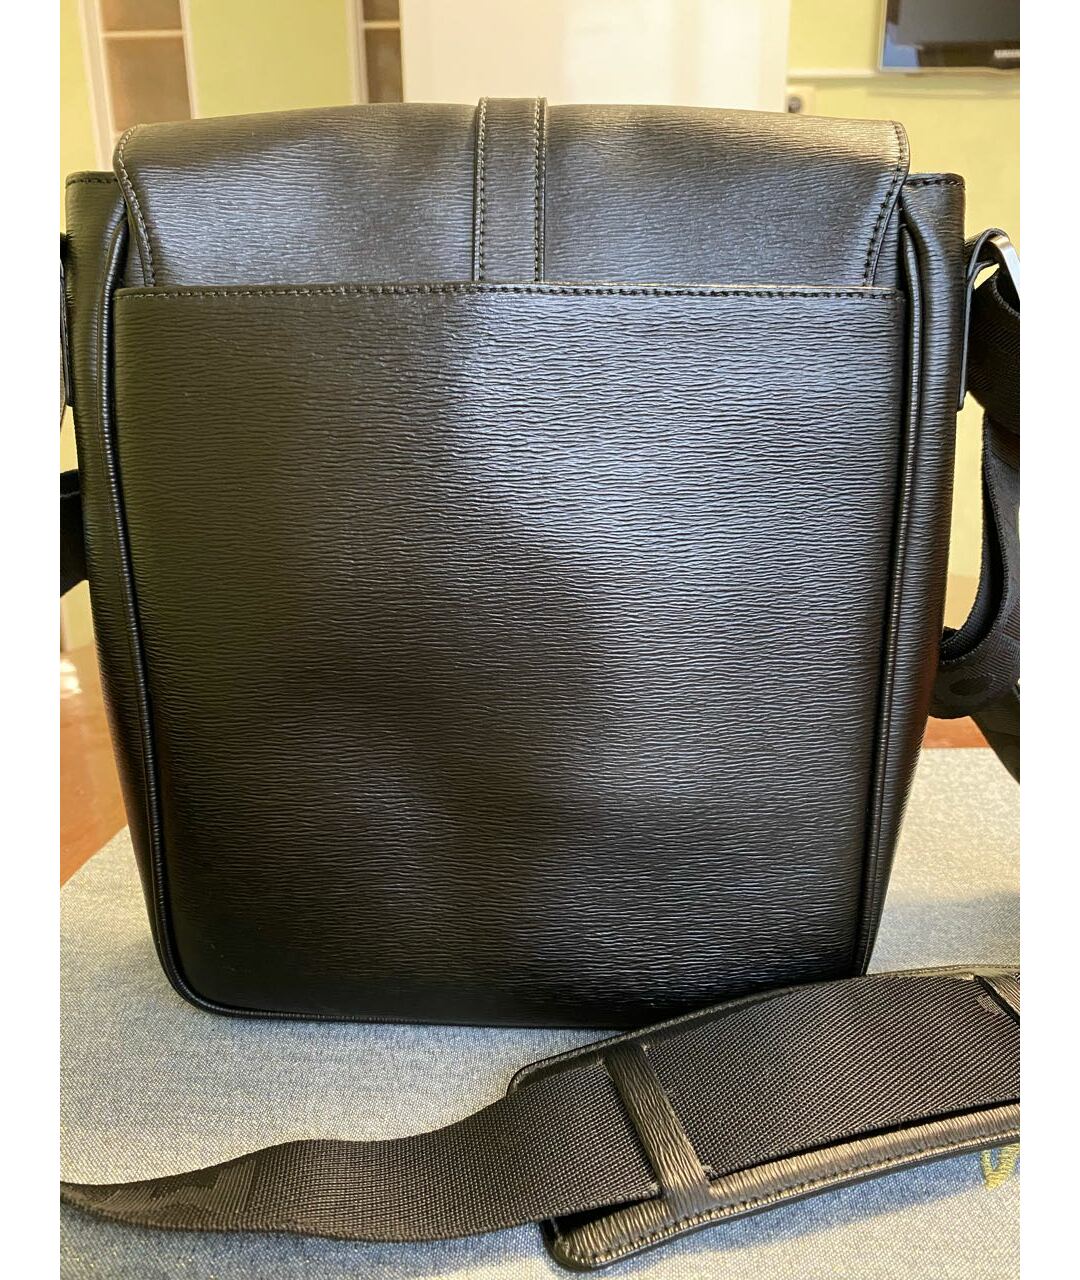 MONTBLANC Черная кожаная сумка на плечо, фото 3